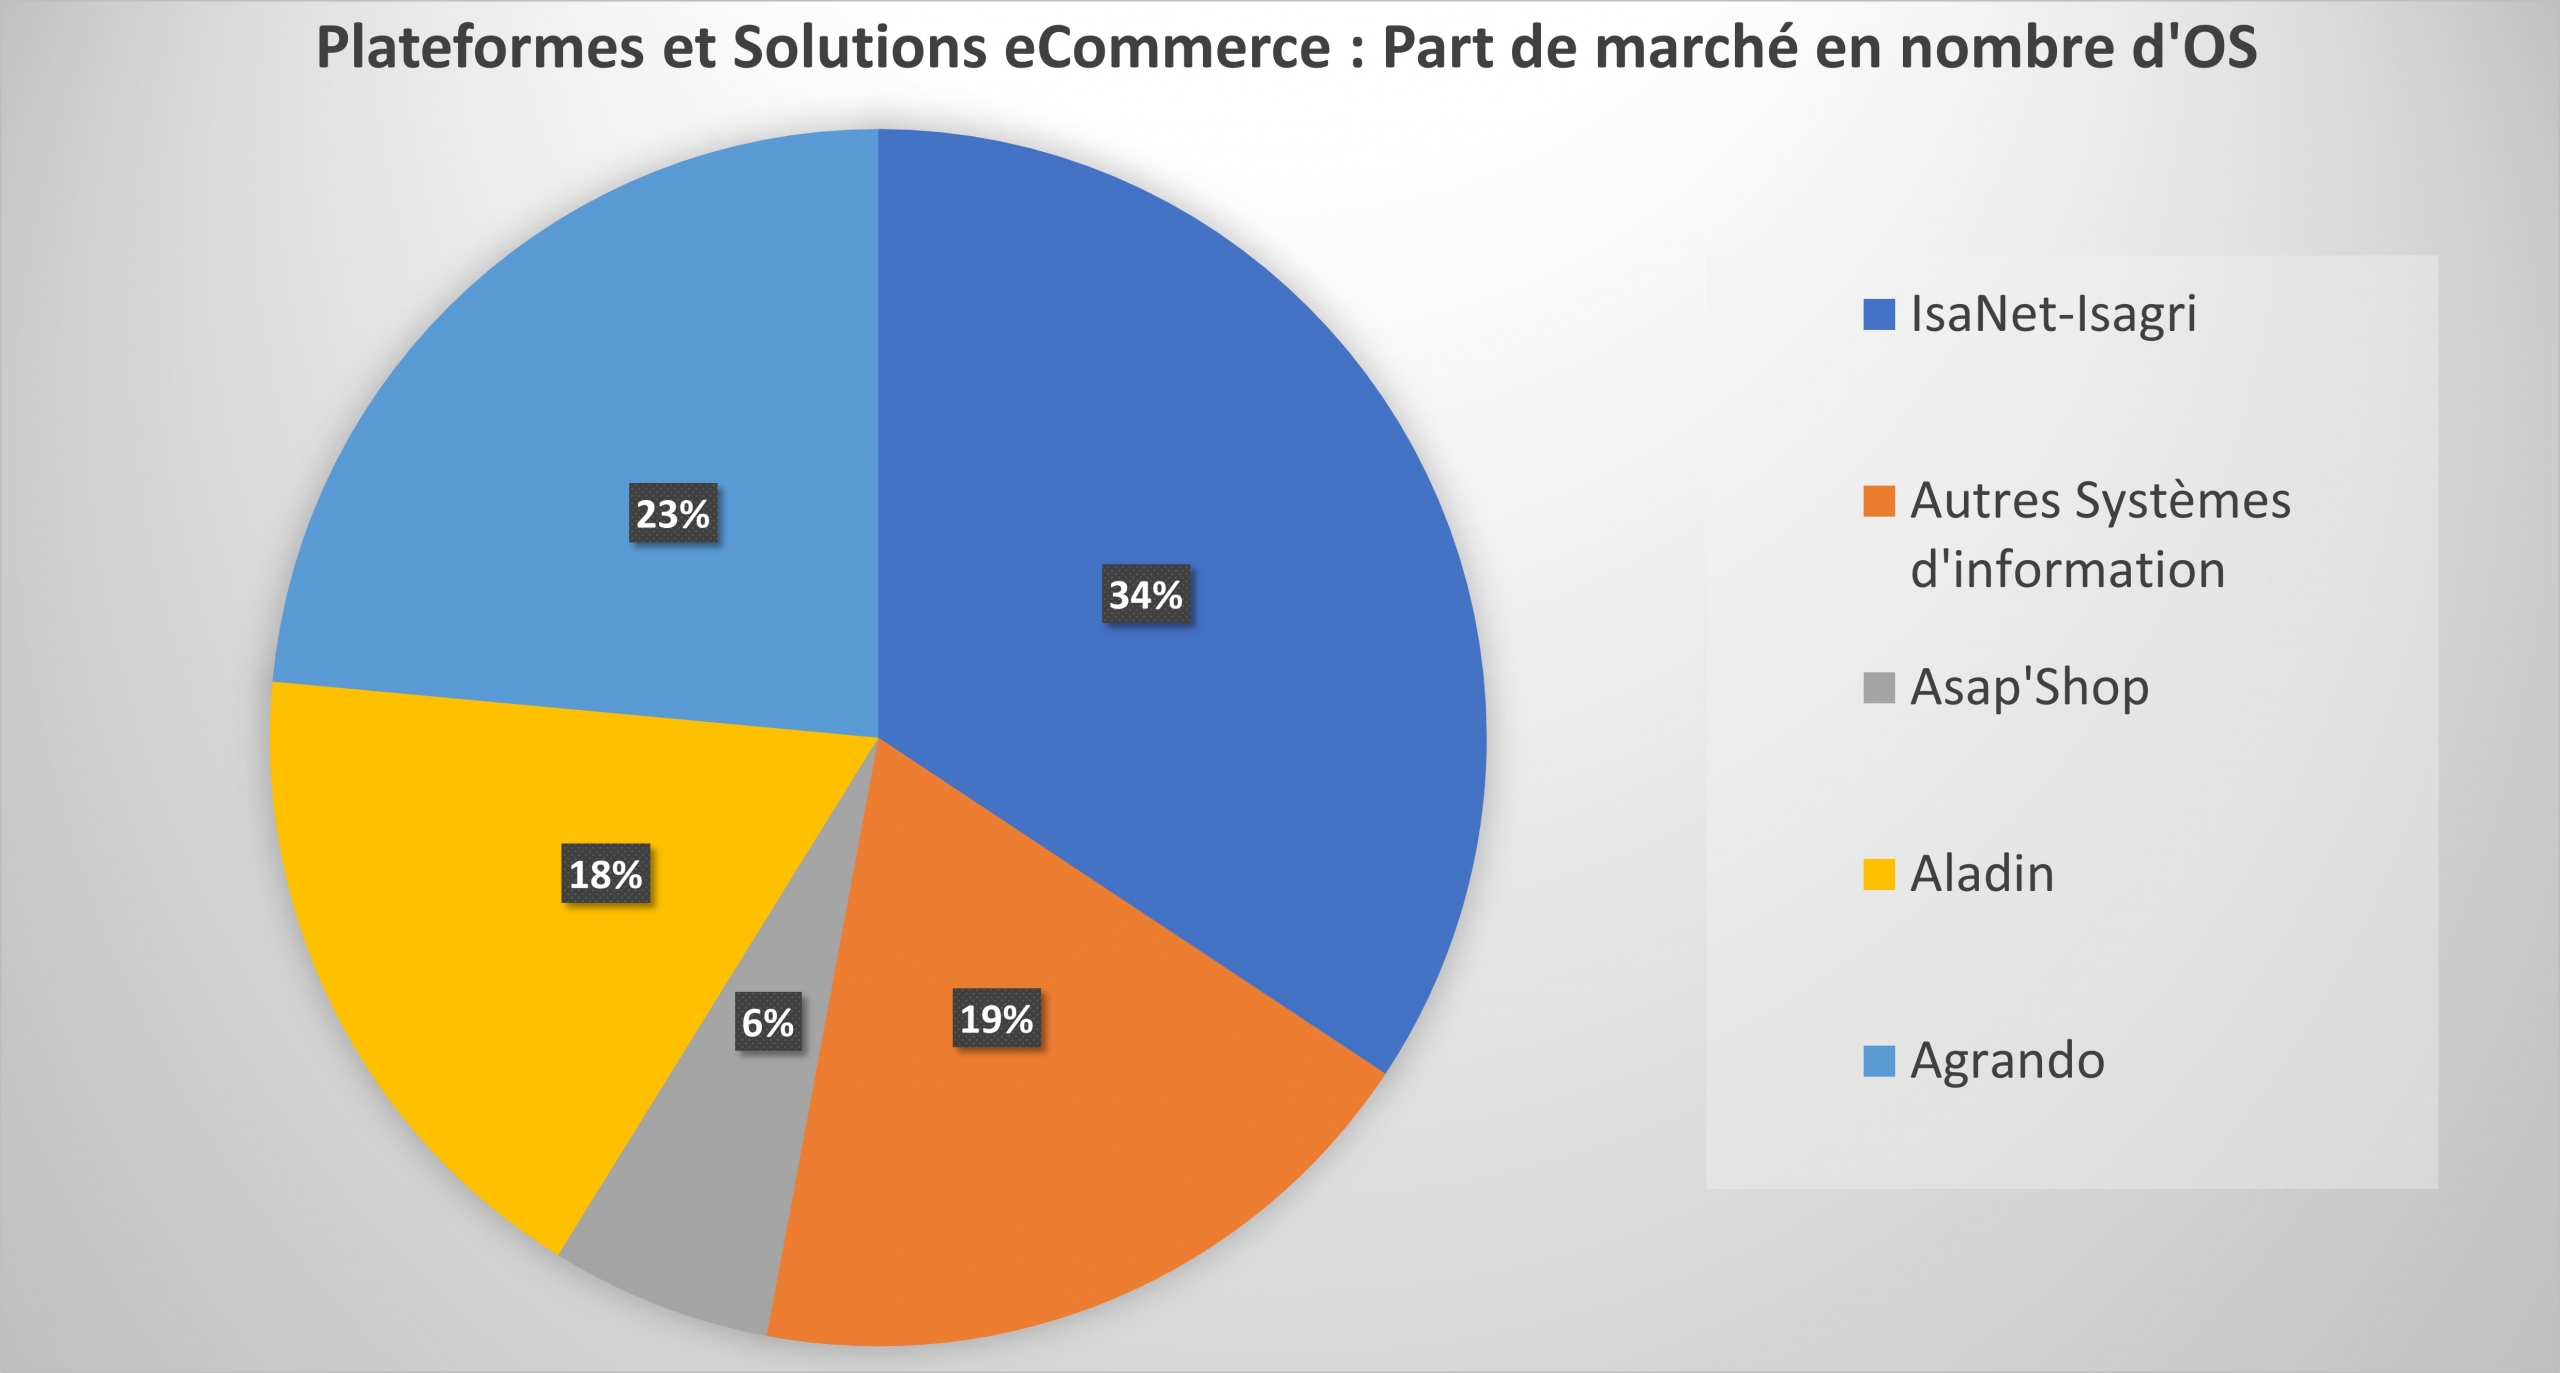 Plateformes et solutions e-commerces utilisées chez les coopératives et négoces agricoles en France